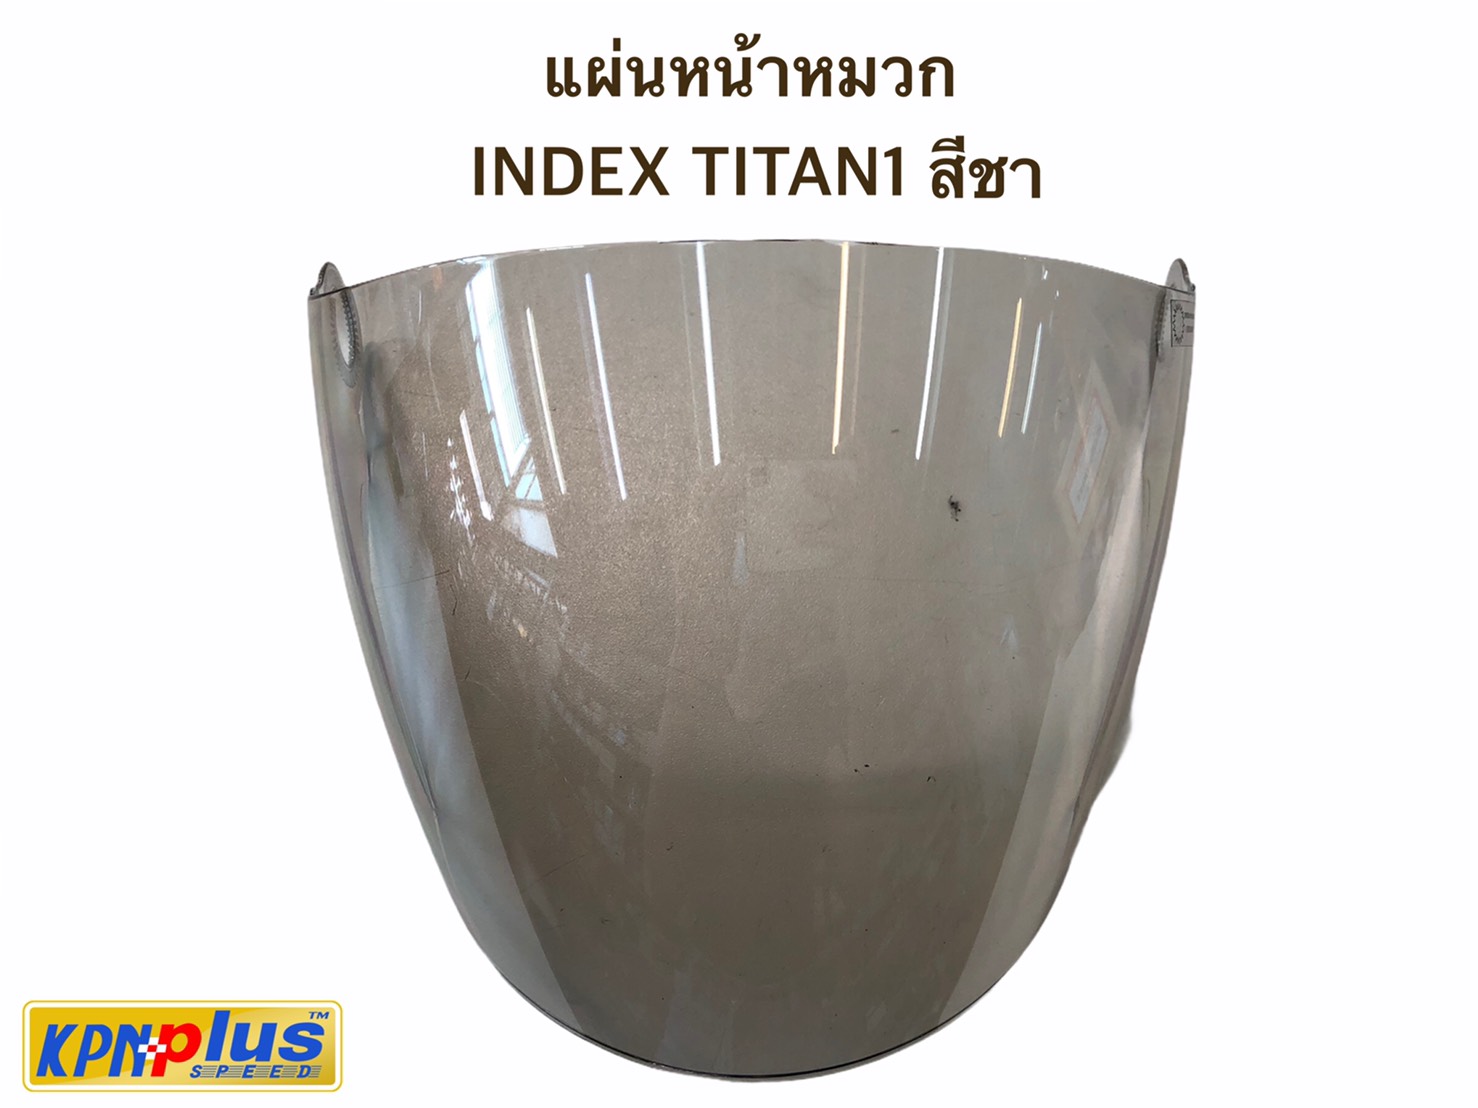 แผ่นหน้าหมวก INDEX TITAN1 สีชา